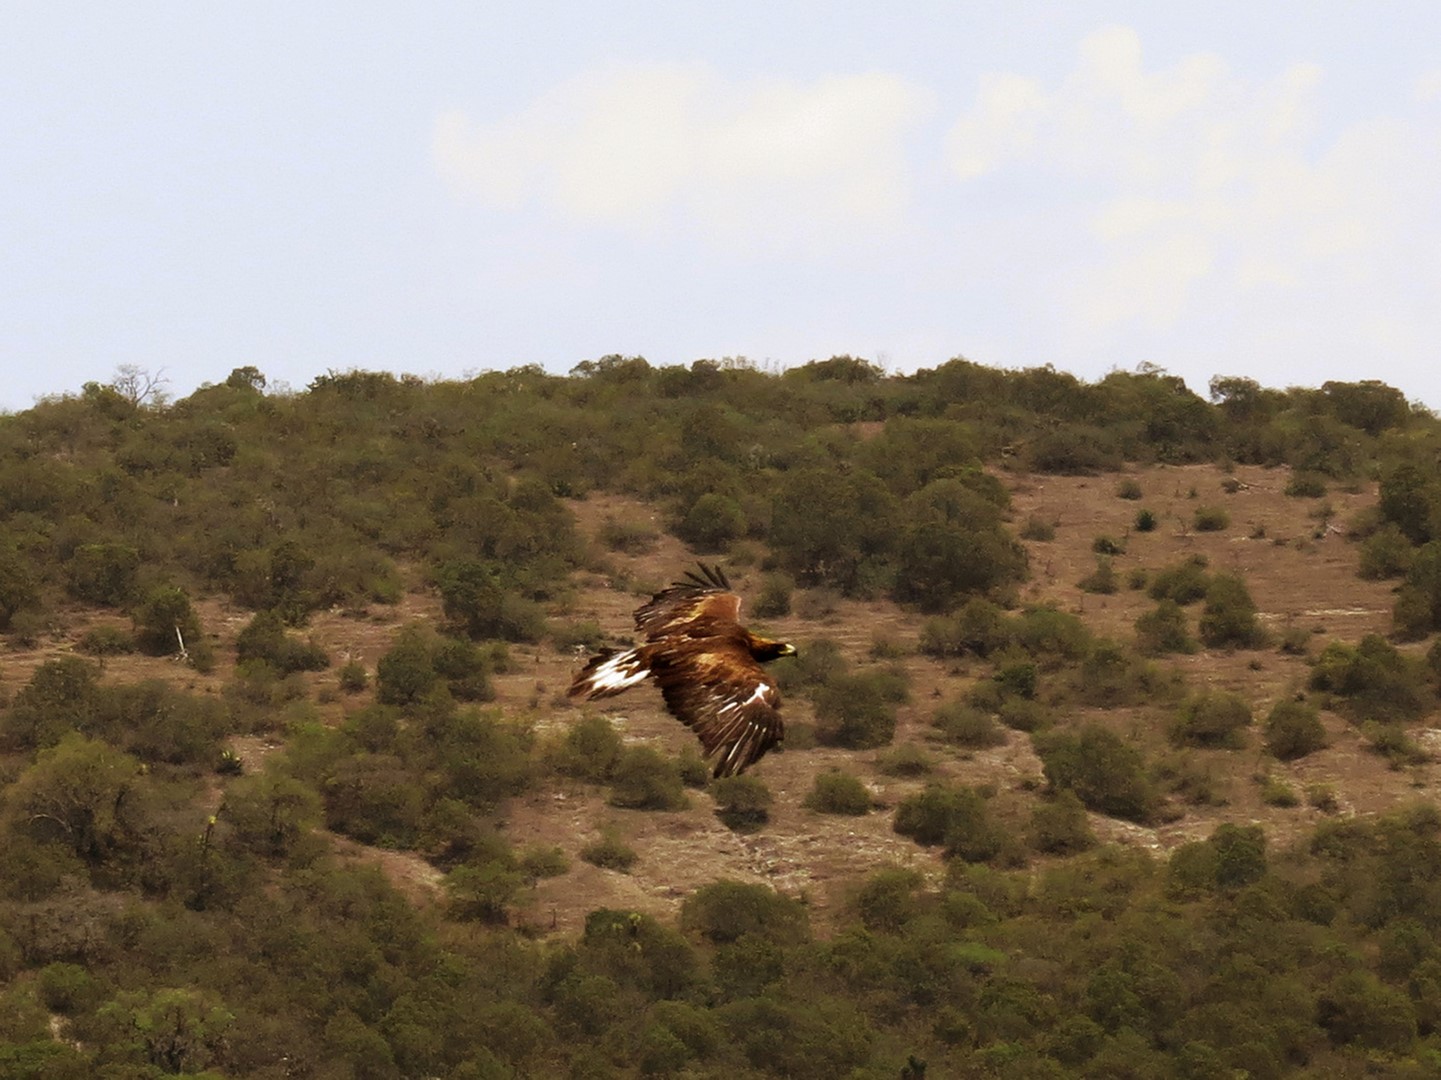 Profepa reintegra a su hábitat a un ejemplar de águila real en SLP (Profepa)